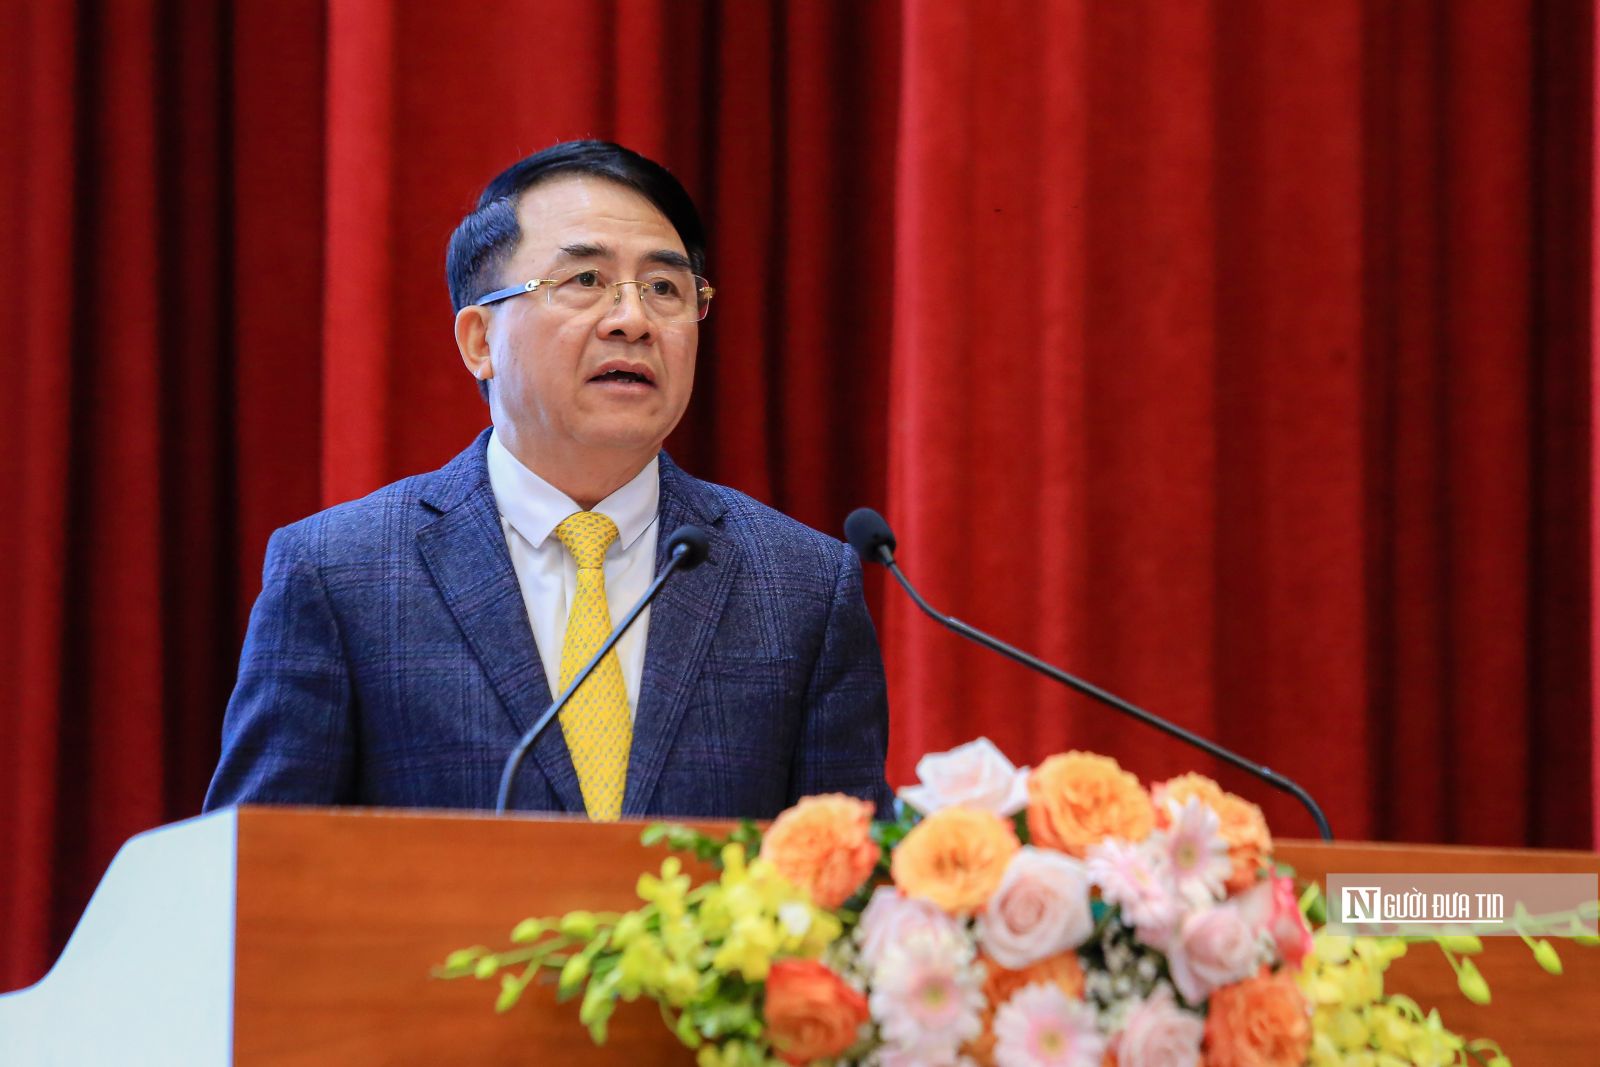 Khai mạc Hội nghị Triển khai công tác năm 2023 Hội Luật gia Việt Nam